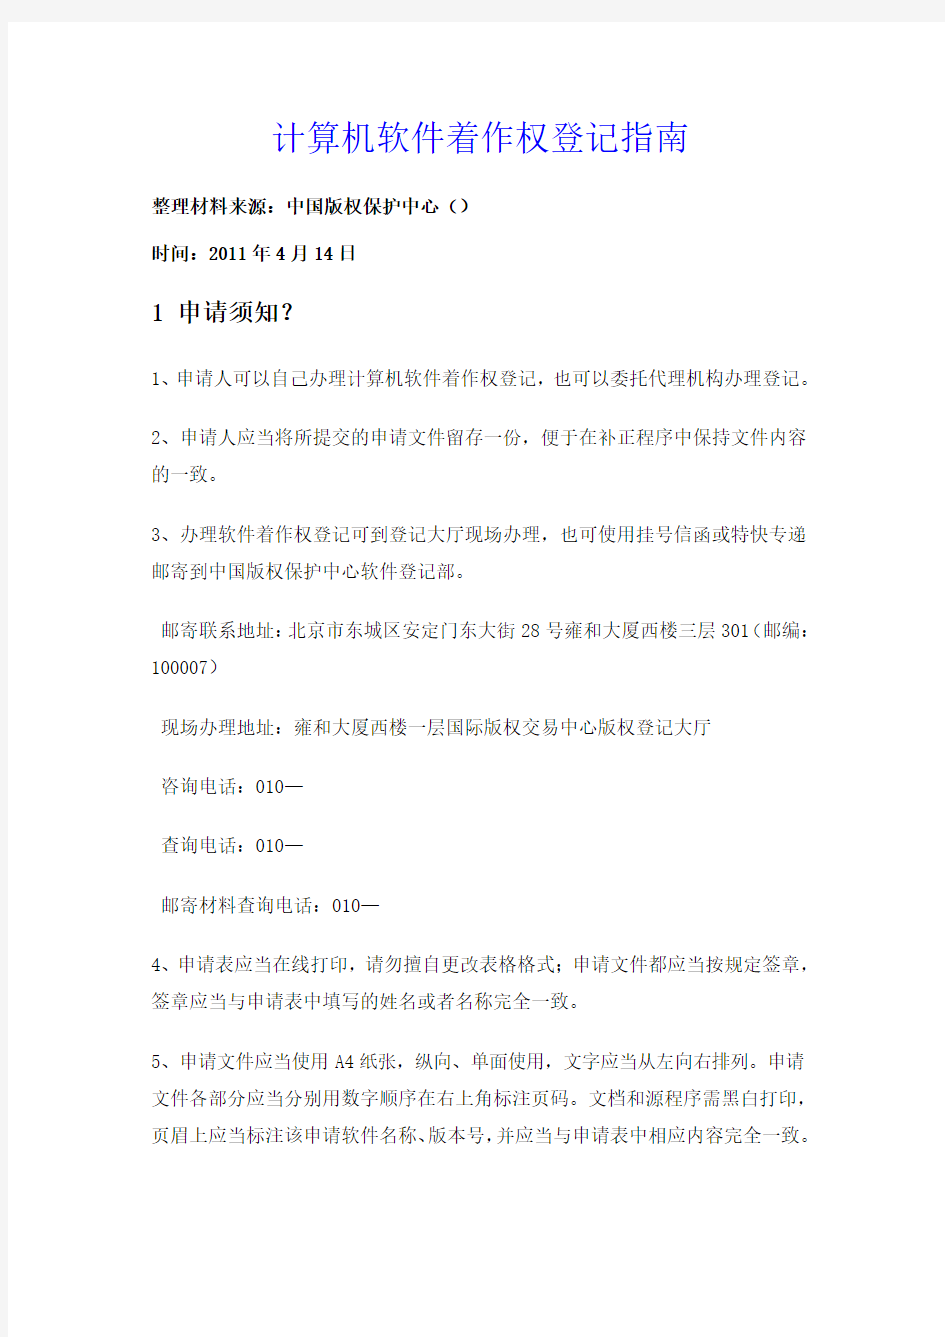 计算机软件著作权登记指南自中国版权保护中心